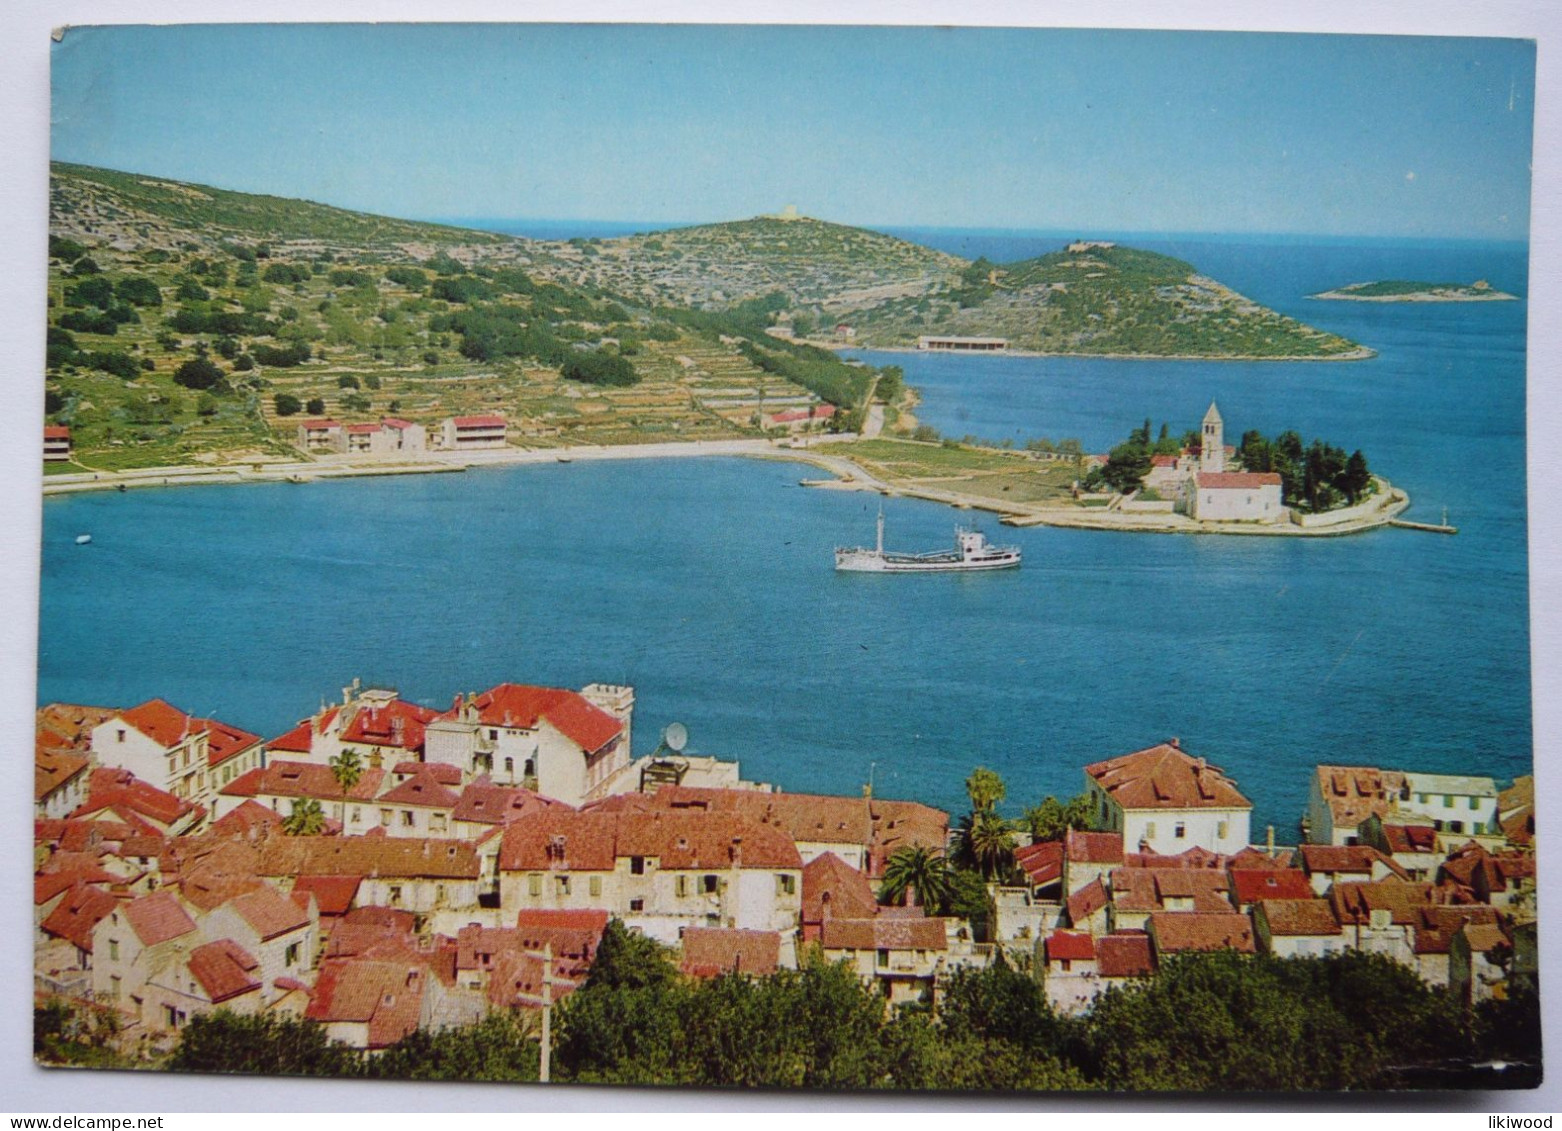 Otok Vis (Island Vis) - Croatie